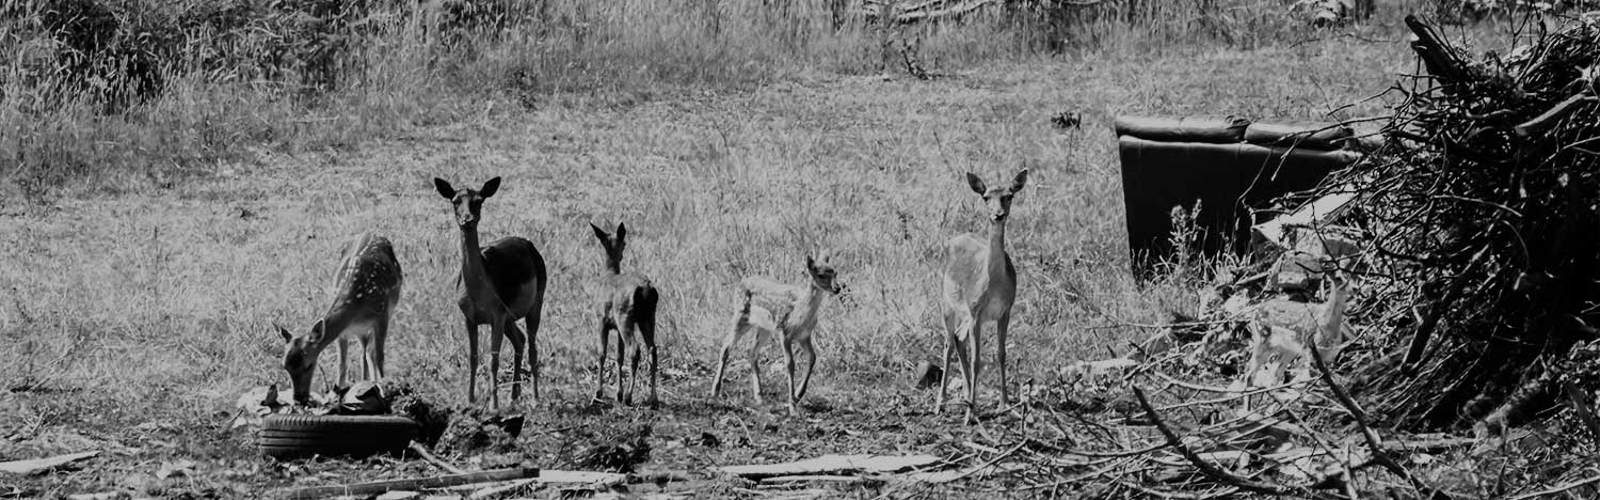 A herd of fawn deer